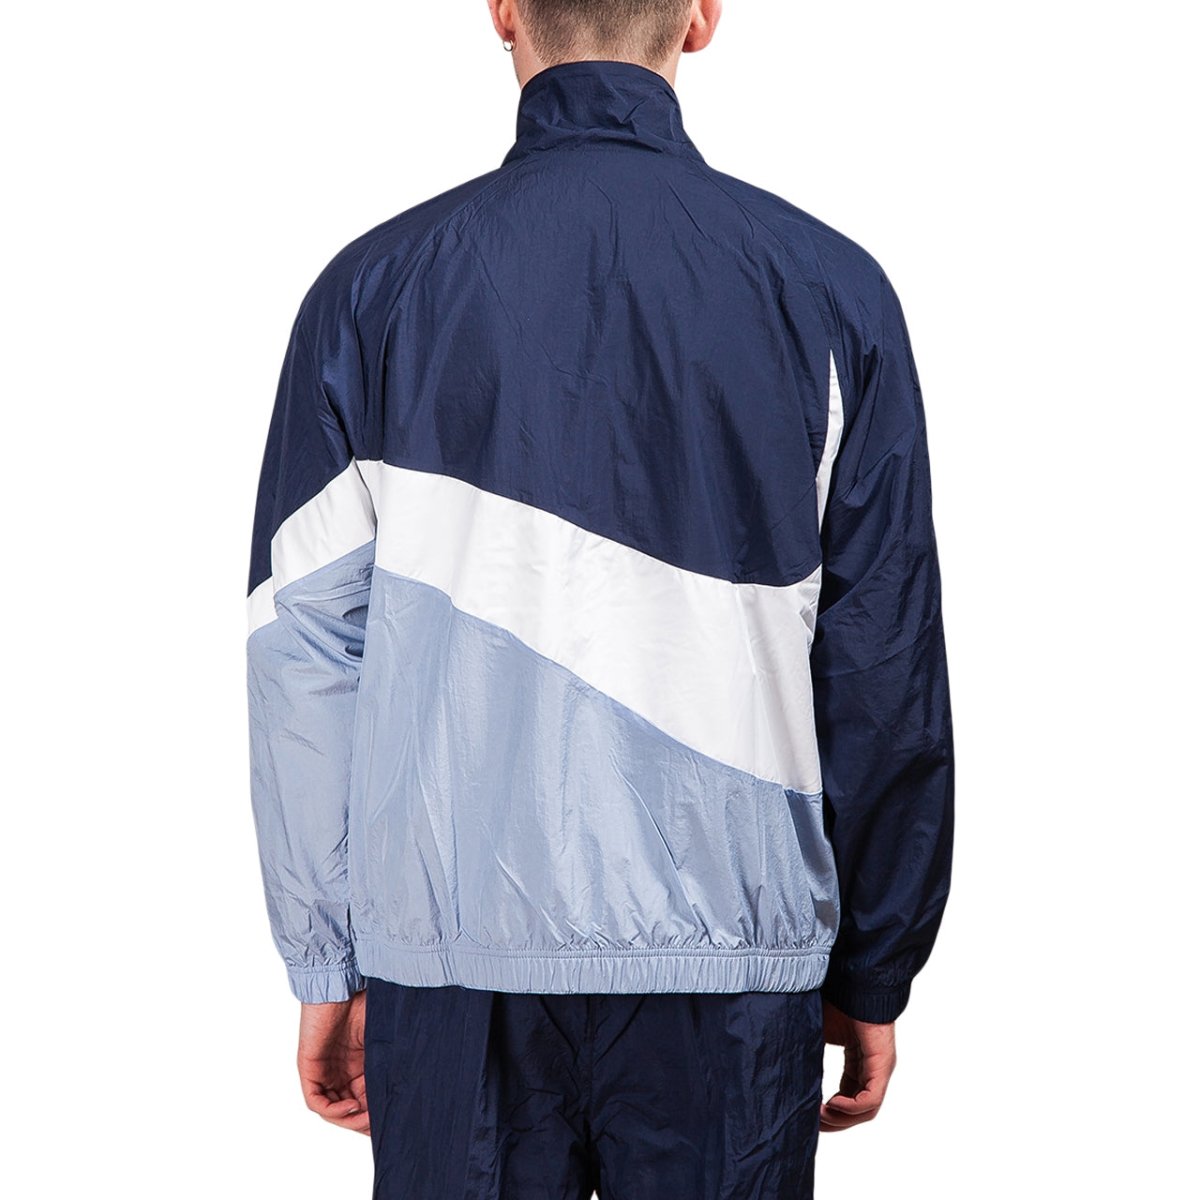 Nike Sportswear ''Swoosh'' Woven Jacket (Blau)  - Allike Store